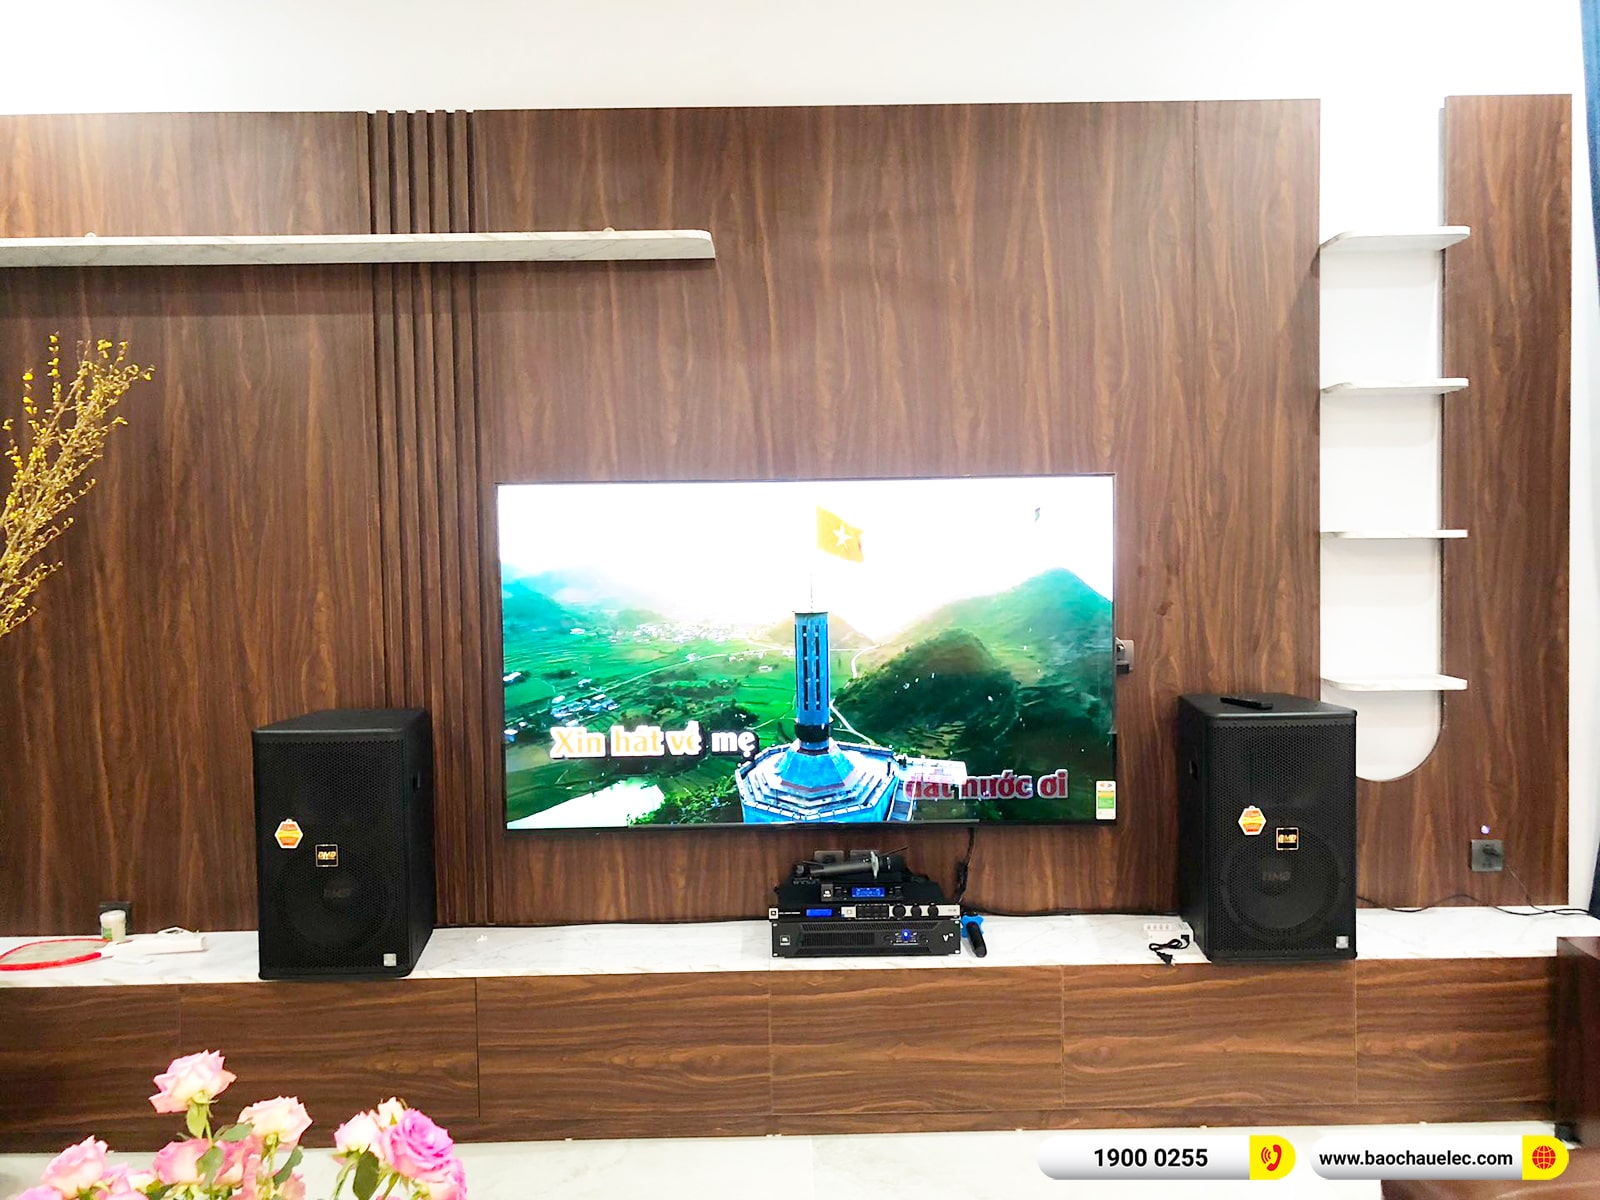 Lắp đặt dàn karaoke BMB hơn 73tr cho anh Thắng tại Hà Nội (BMB 1212SE, JBL V10, KX180A, SW612, VM200) 